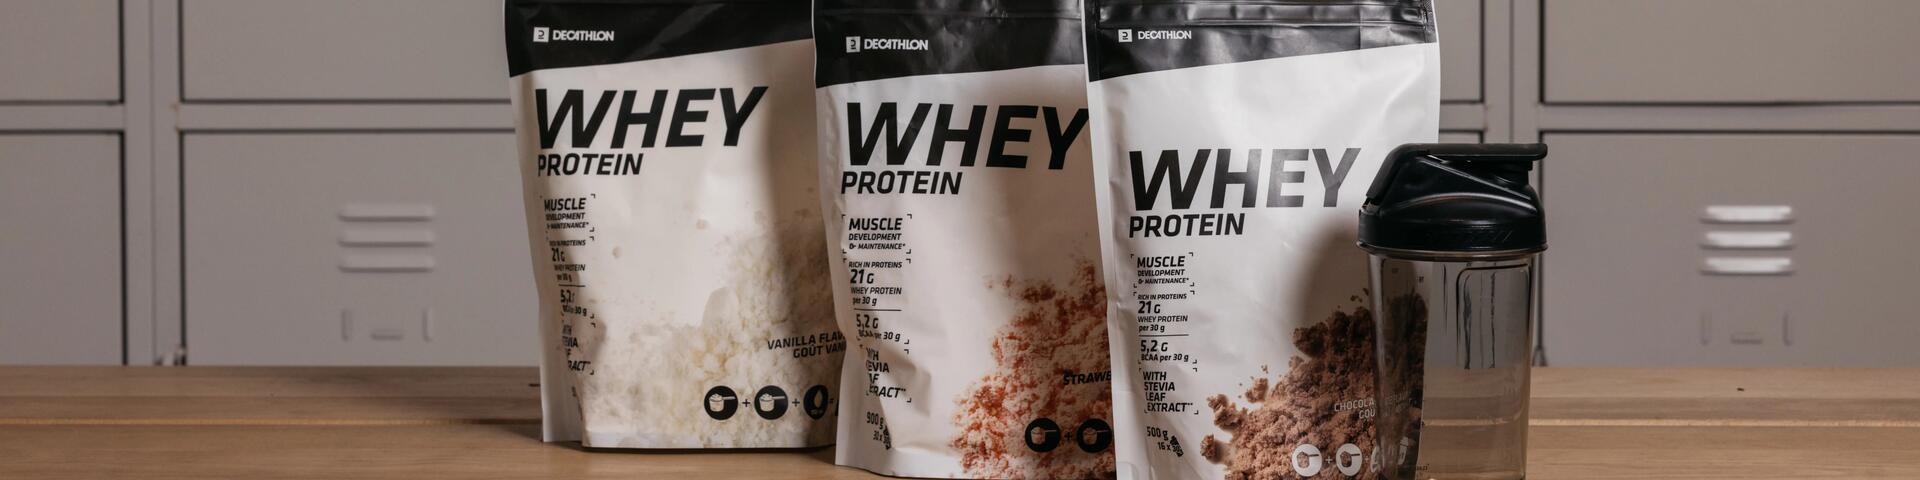 Decathlon Whey protein